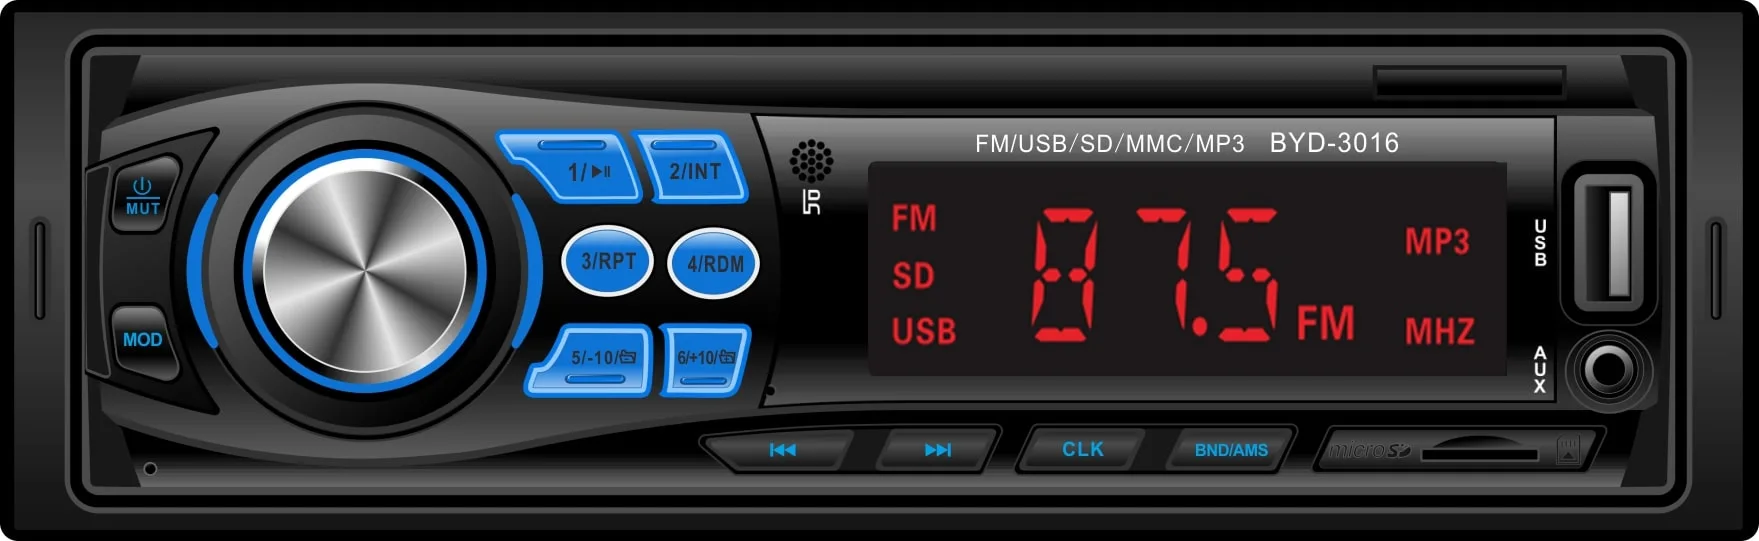 Haute qualité/performance à coût élevé Voiture Lecteur MP3 Audio Bluetooth Transmetteur FM